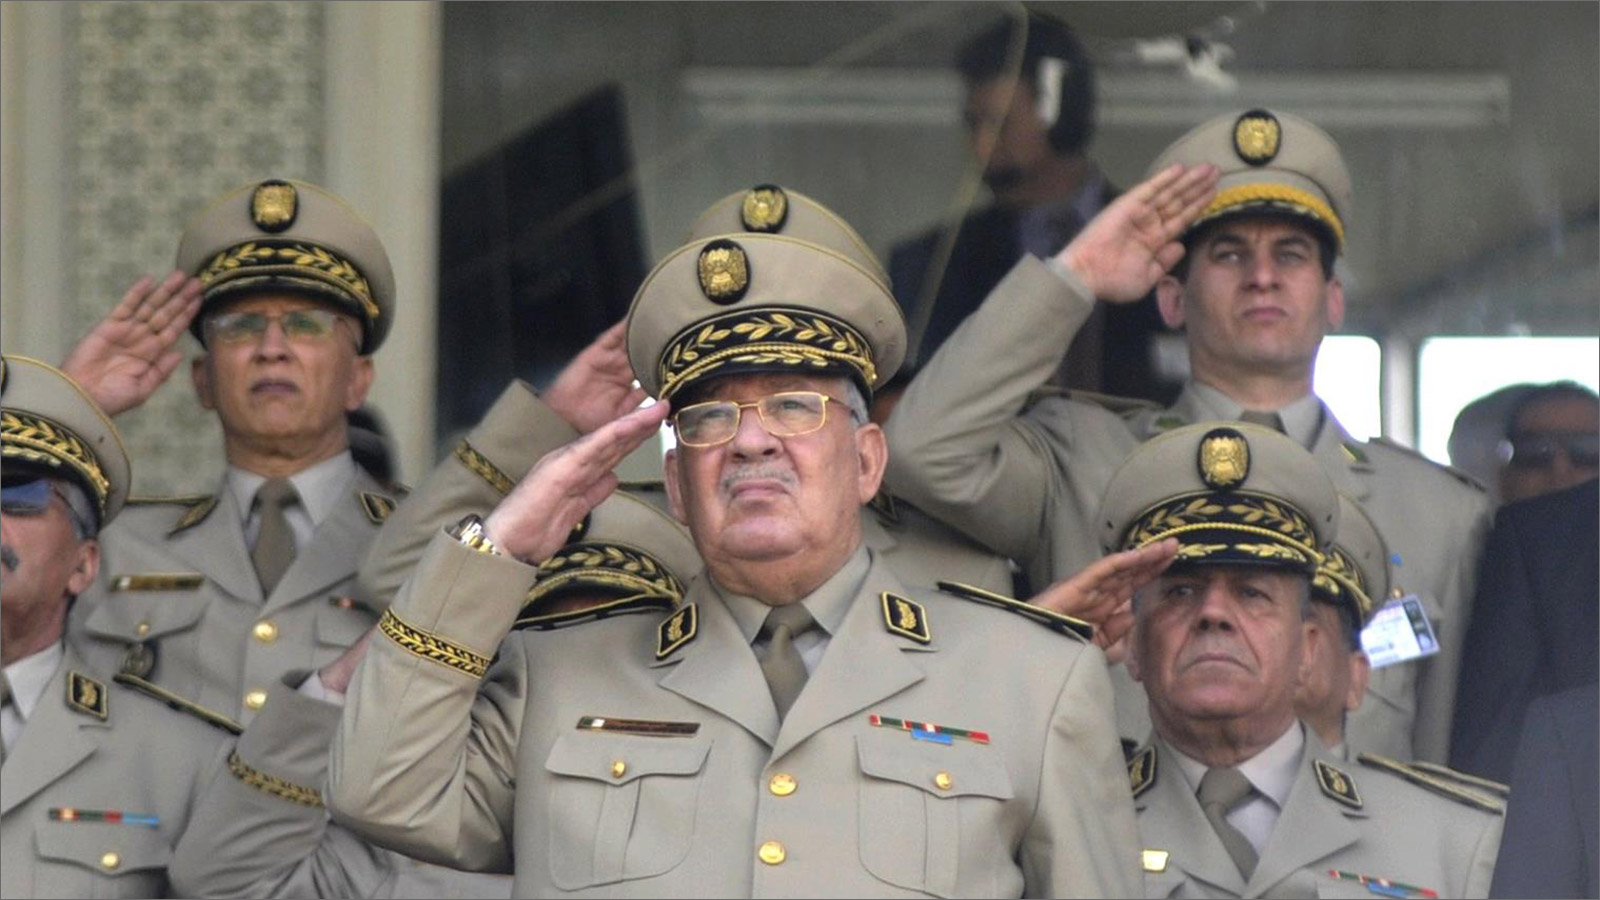 قايد صالح اتهم بشكل مباشر القائد السابق لجهاز المخابرات بـ